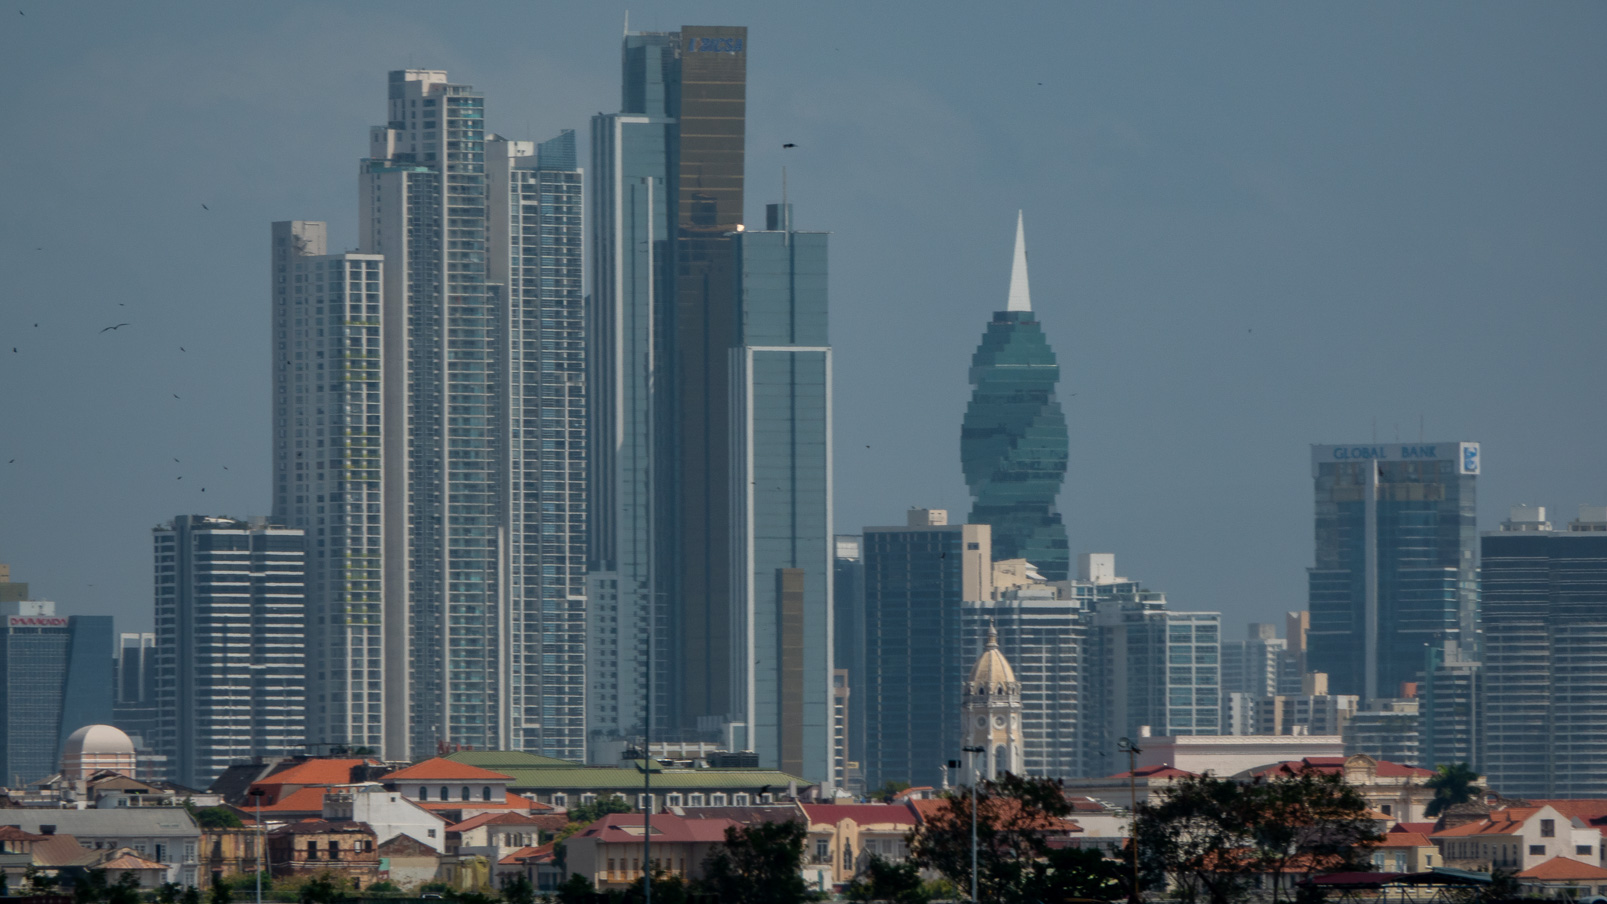 ... parmi lesquels la F&F Tower appelé aussi Revolution Tower et Tour Vis, est un gratte-ciel de bureaux de 243 mètres de hauteur c'était le sixième plus haut gratte-ciel de Panama. L'immeuble a une structure torsadée, en hélice,